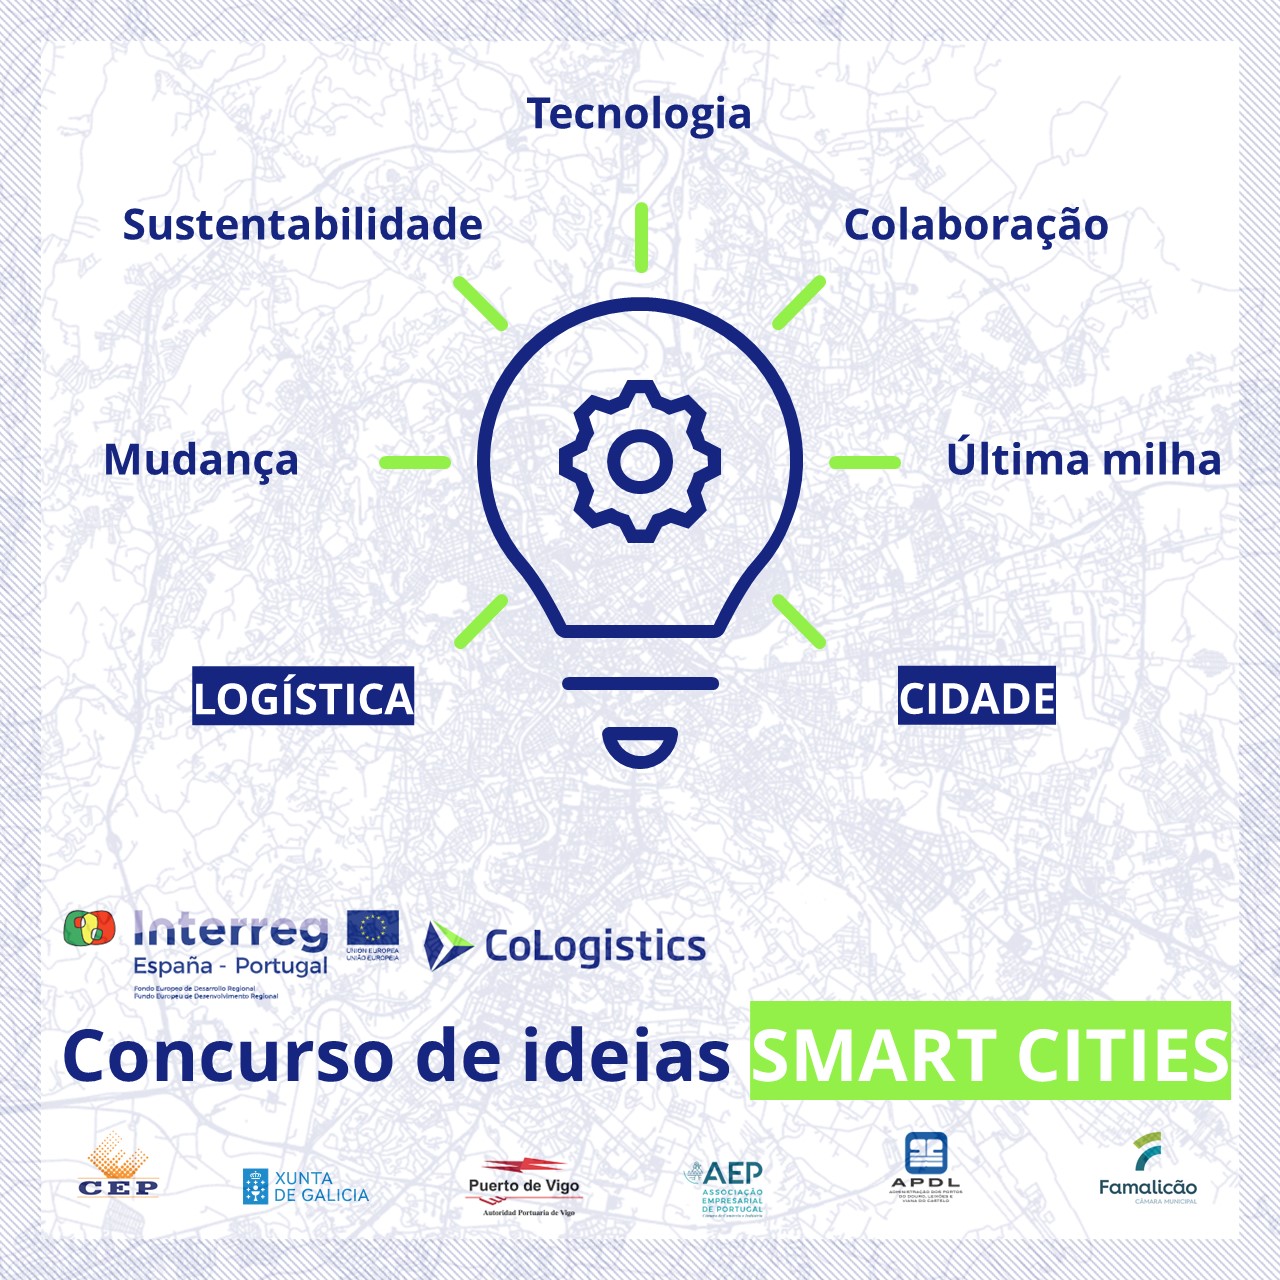 Concurso de Ideias Smart Cities de CoLogistics